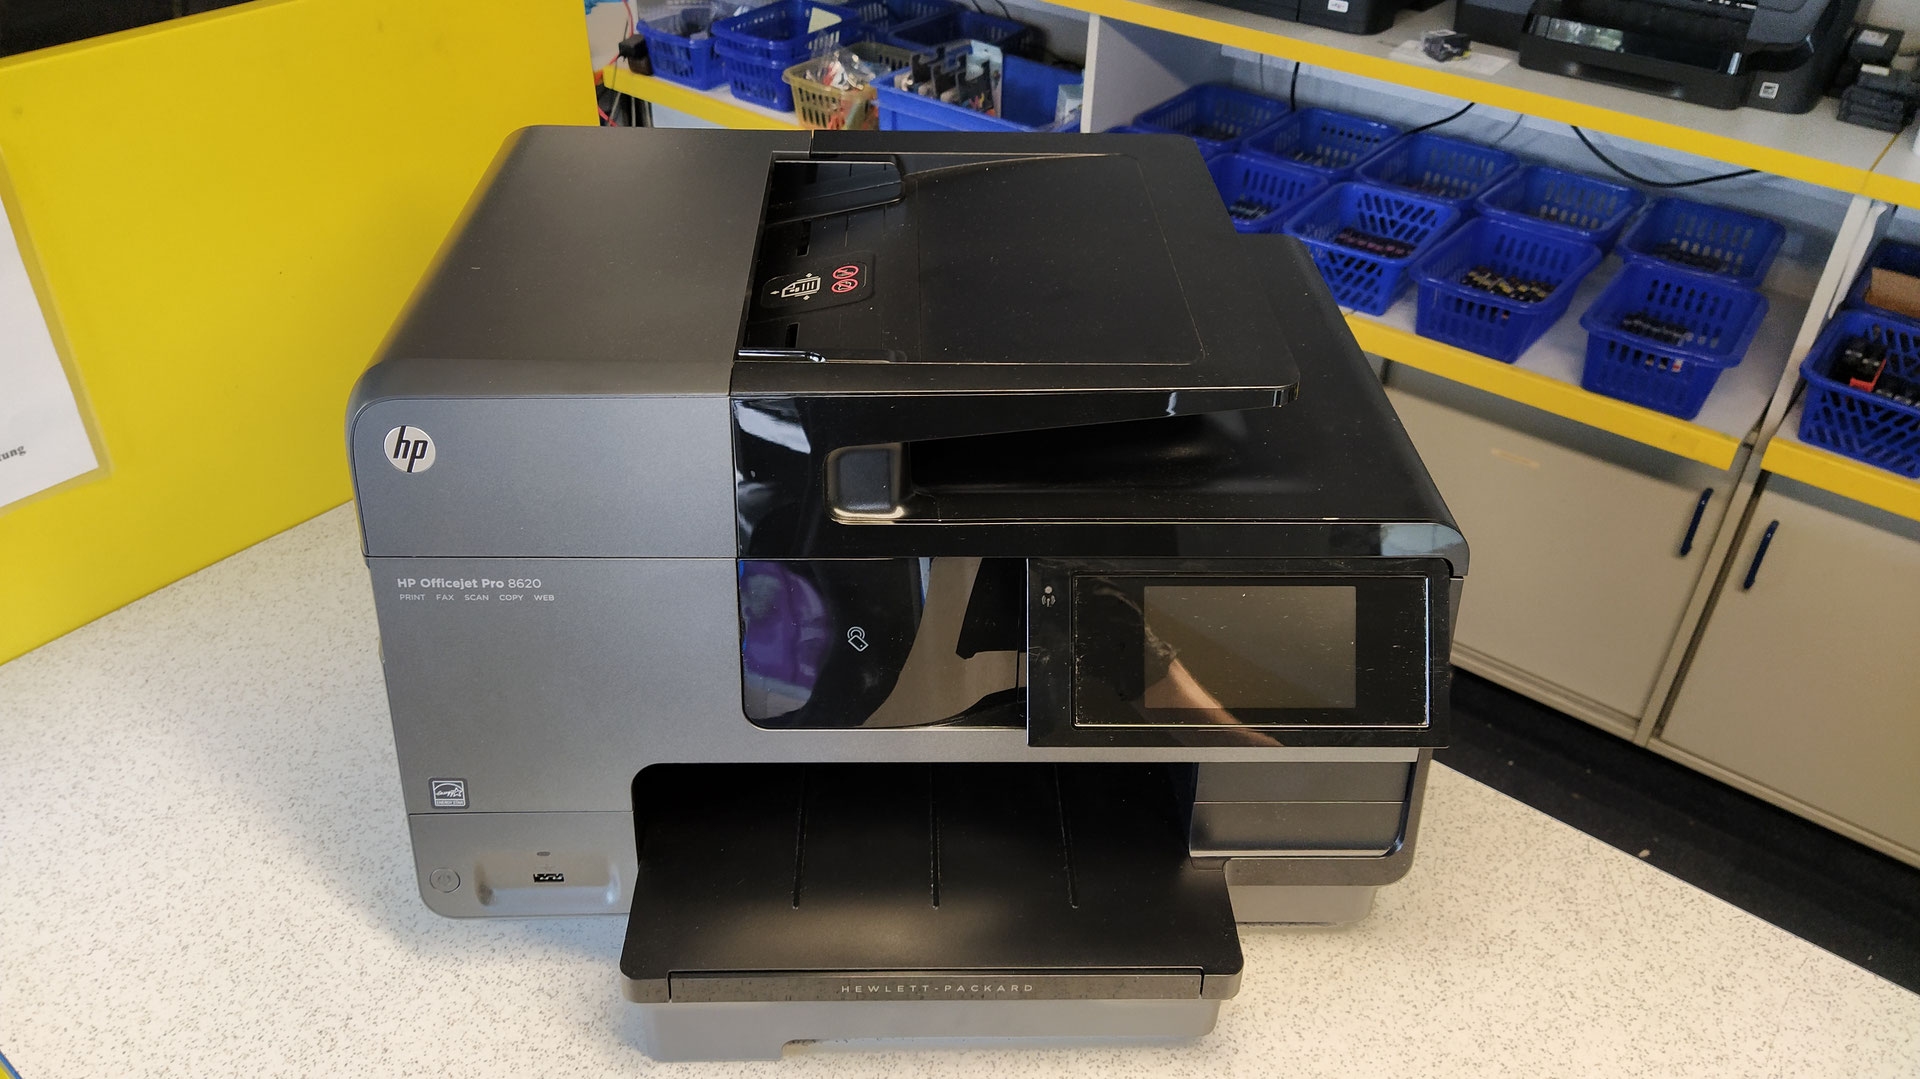 Kaufempfehlung neue und gebrauchte Drucker - HWF Patronenservice